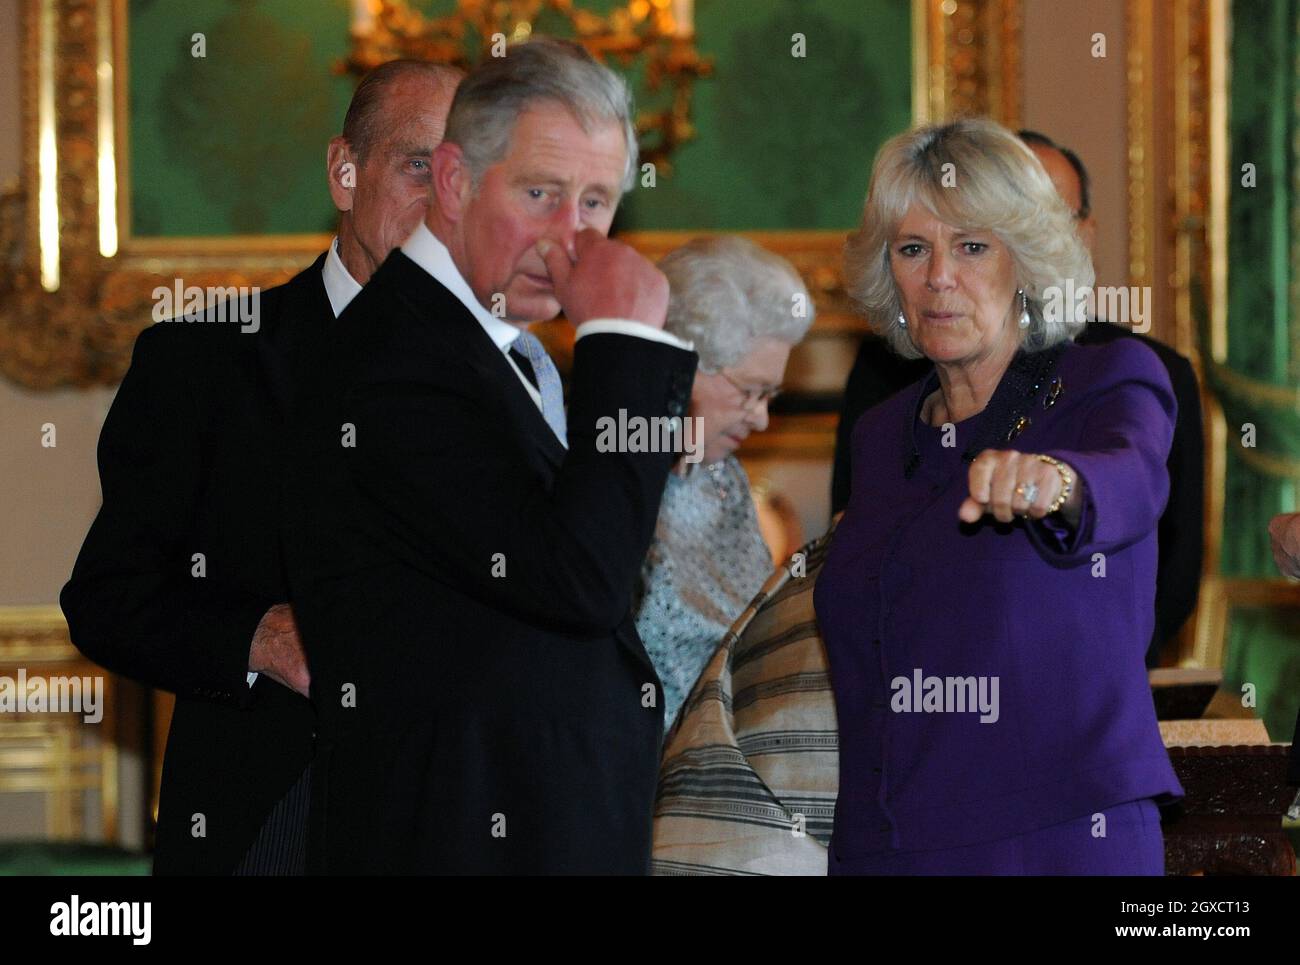 Prinz Charles, Prinz von Wales, Camilla, Herzogin von Cornwall und Prinz Philip, Herzog von Edinburgh sehen eine Ausstellung von Gegenständen im White Drawing Room im Schloss Windsor zu Beginn eines Staatsbesuchs des indischen Präsidenten Pratibha Patil am 27. Oktober 2009. Stockfoto